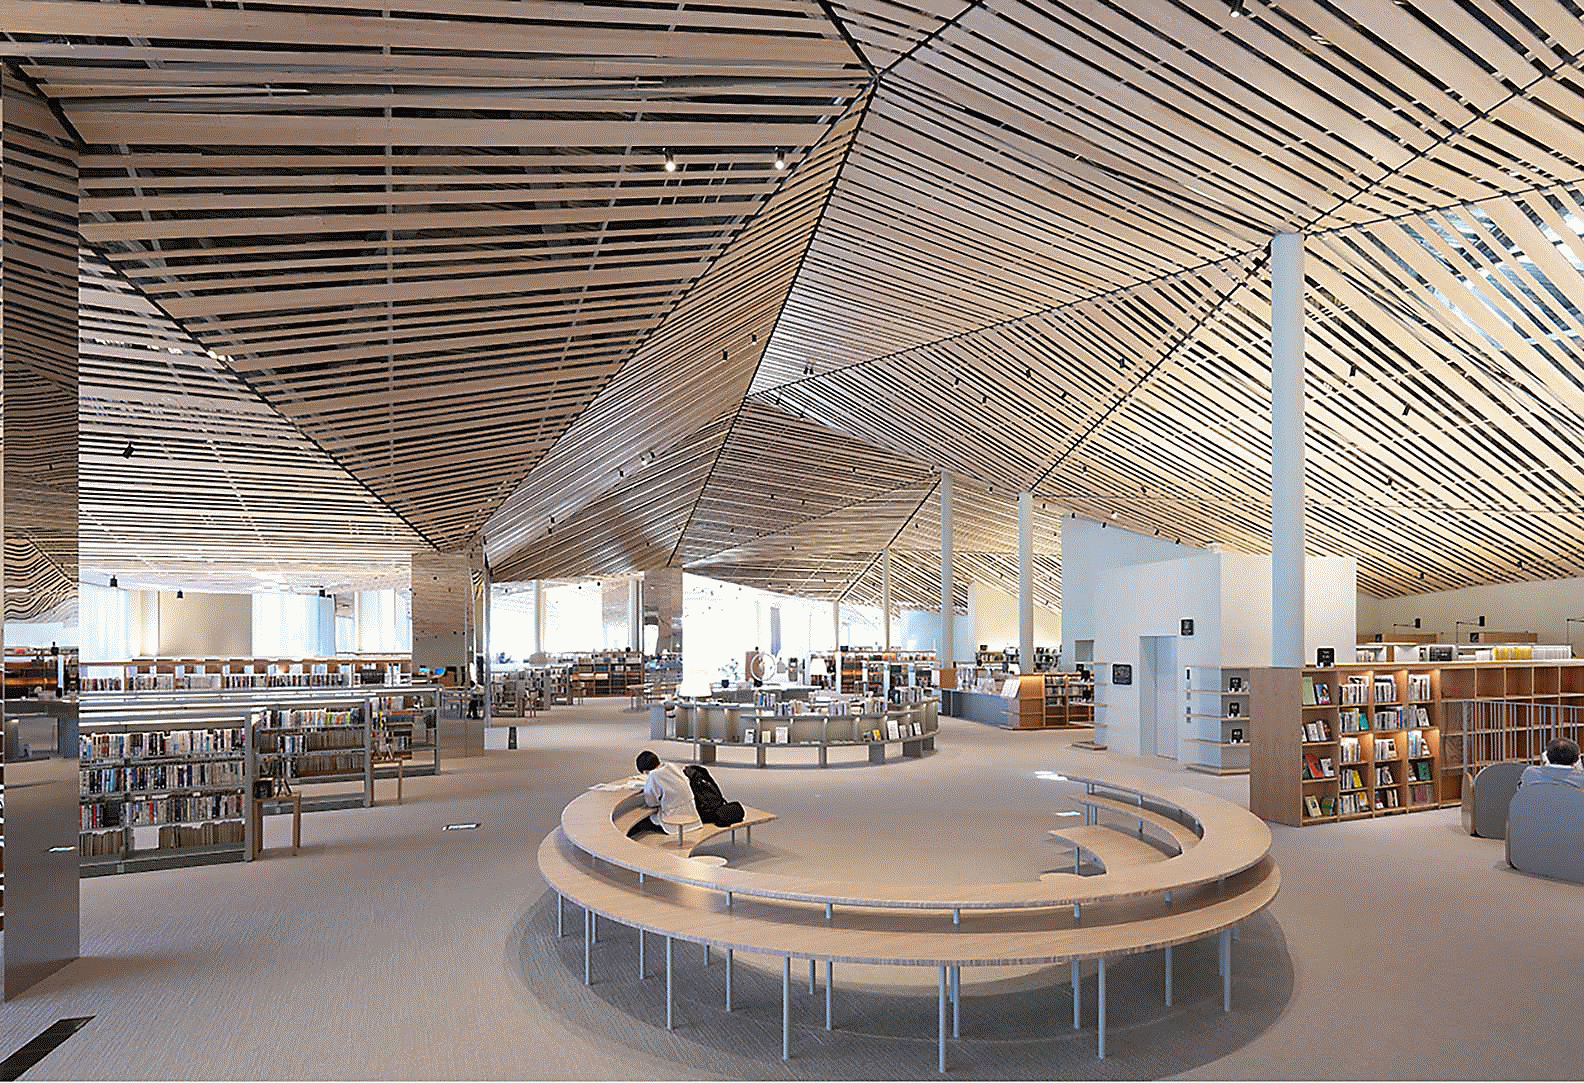 Kép egy nagy és díszes könyvtár belső teréről, ahol egyenes fagerendák láthatók a mennyezeten, és kitűnő a felbontás a kép egész területén